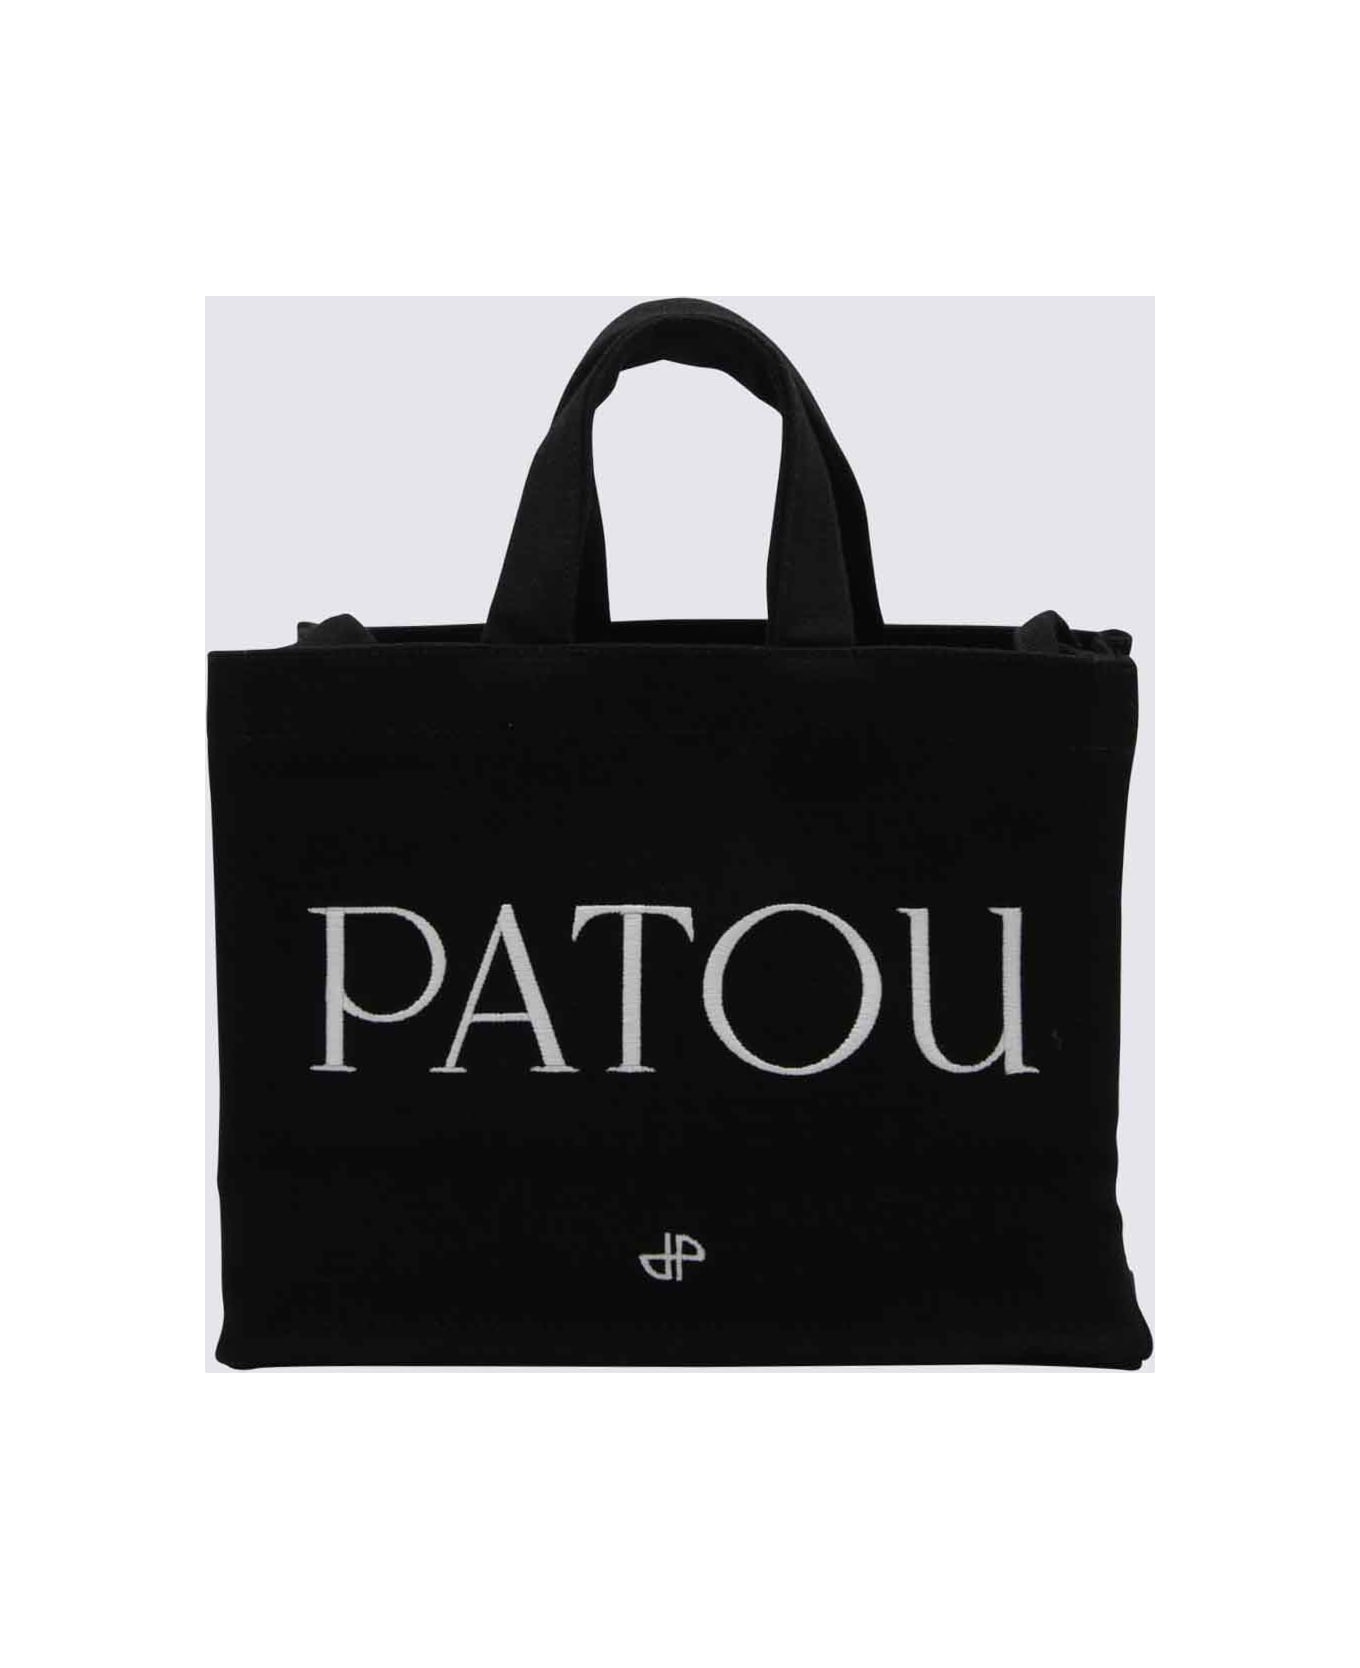 Patou Black Cotton Small Tote Bag - Black